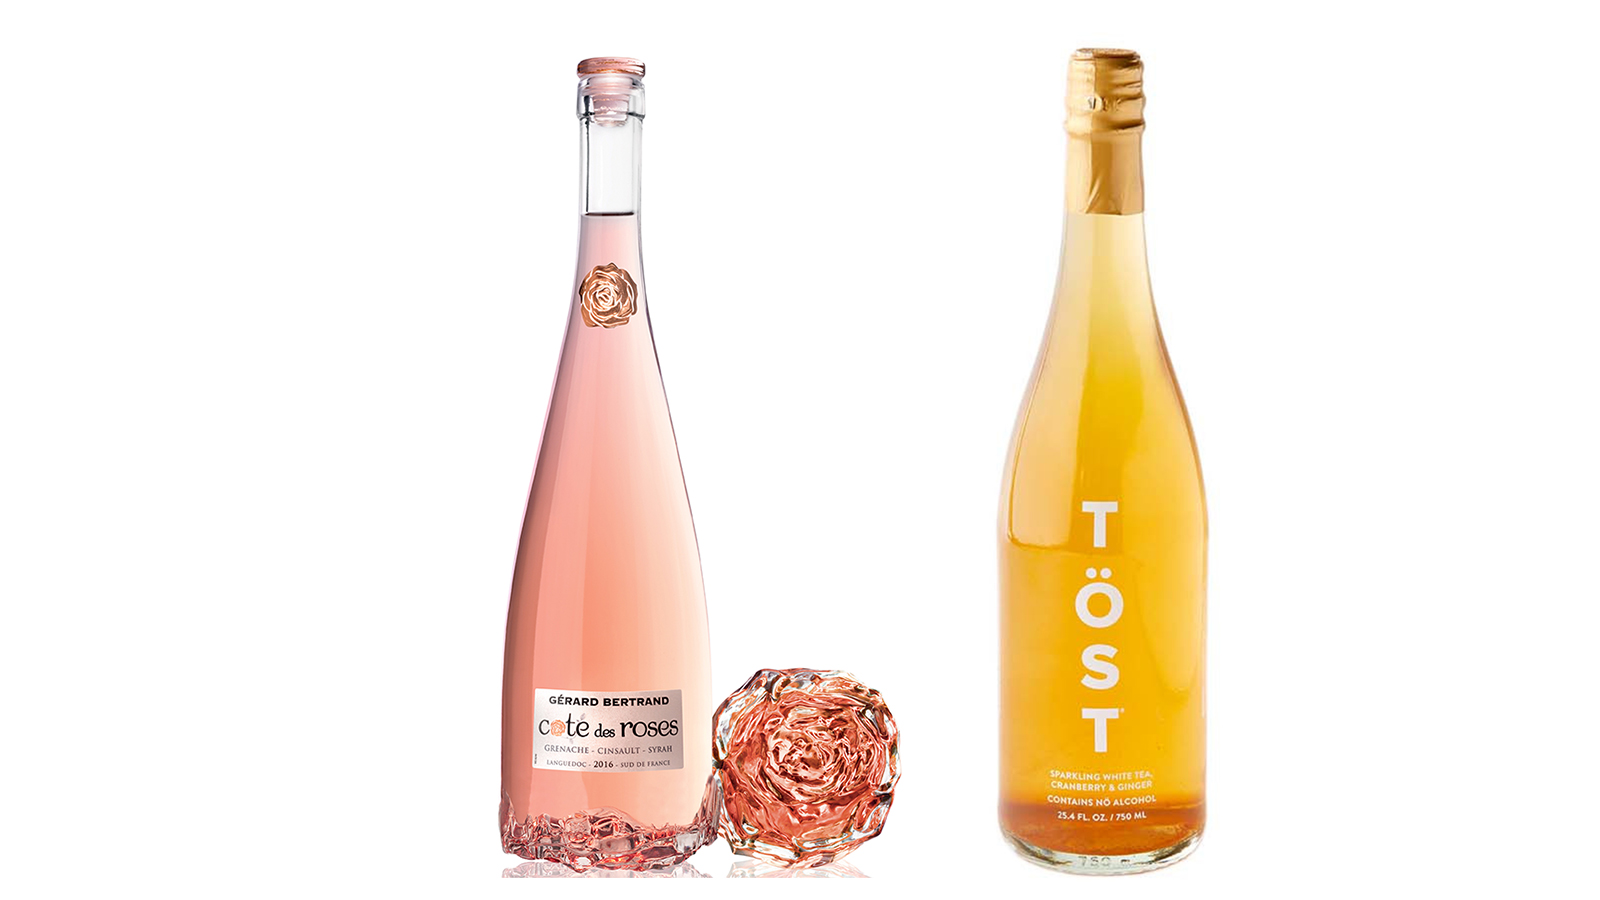 Gérard Bertrand Côte des Roses Rosé & TÖST Rosé